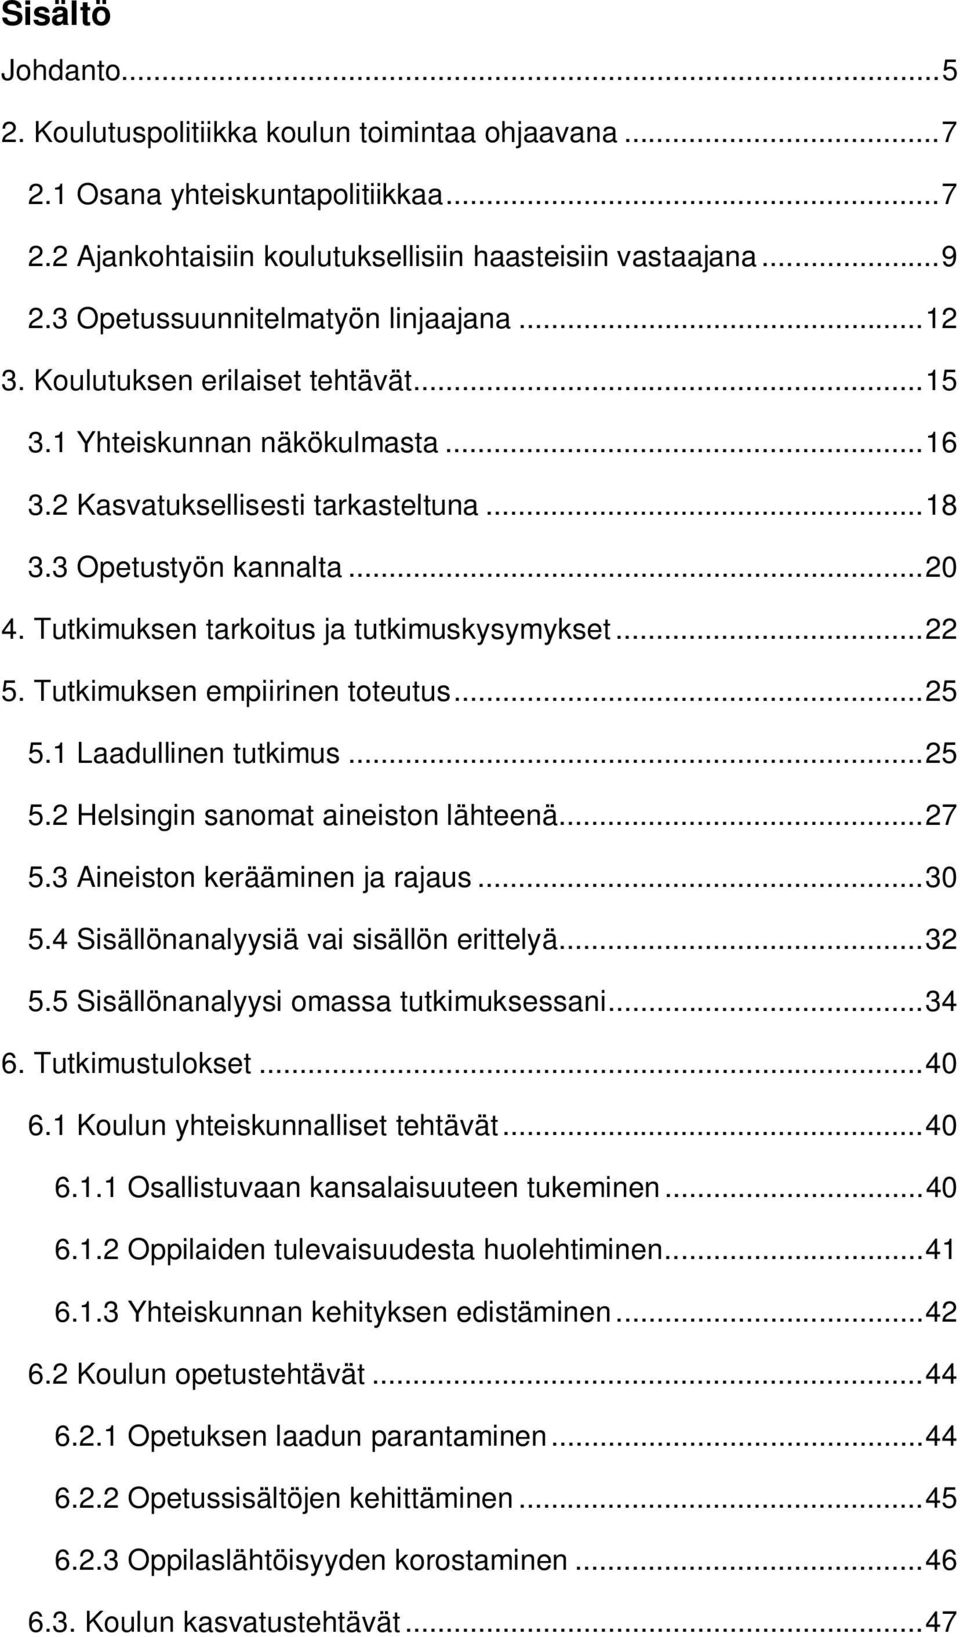 Tutkimuksen tarkoitus ja tutkimuskysymykset... 22 5. Tutkimuksen empiirinen toteutus... 25 5.1 Laadullinen tutkimus... 25 5.2 Helsingin sanomat aineiston lähteenä... 27 5.